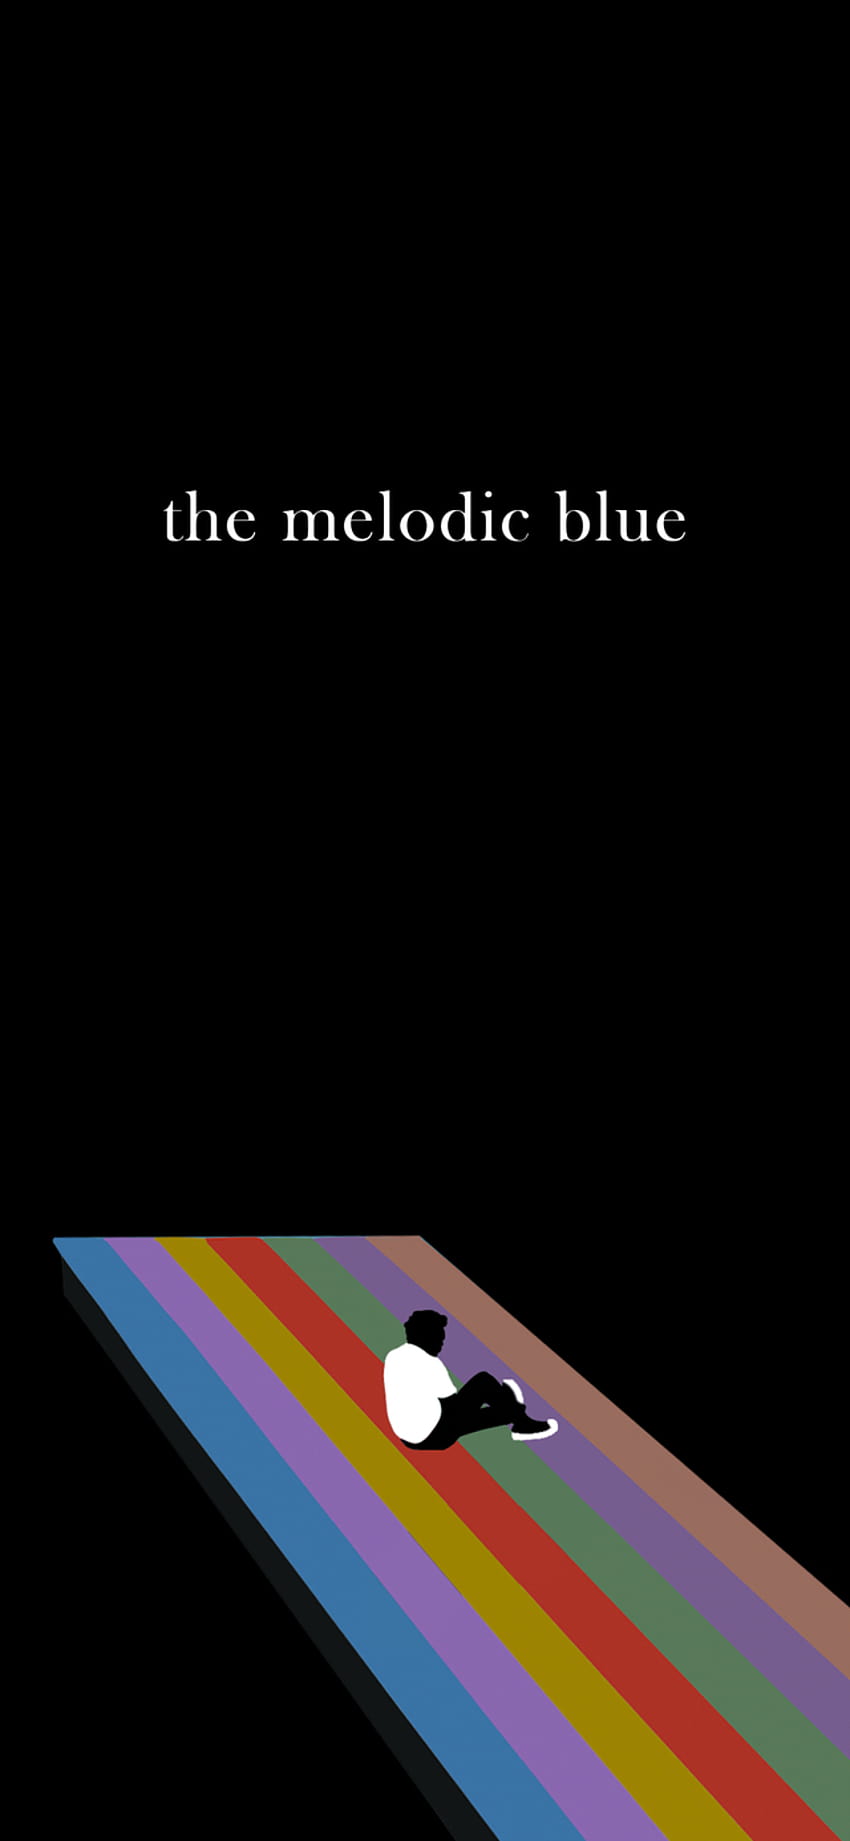 The Melodic Blue のカバーを編集しました。 右に 2 スワイプします。 どんな種類のフィードバックも歓迎します。 : r/ベイビーキーム HD電話の壁紙